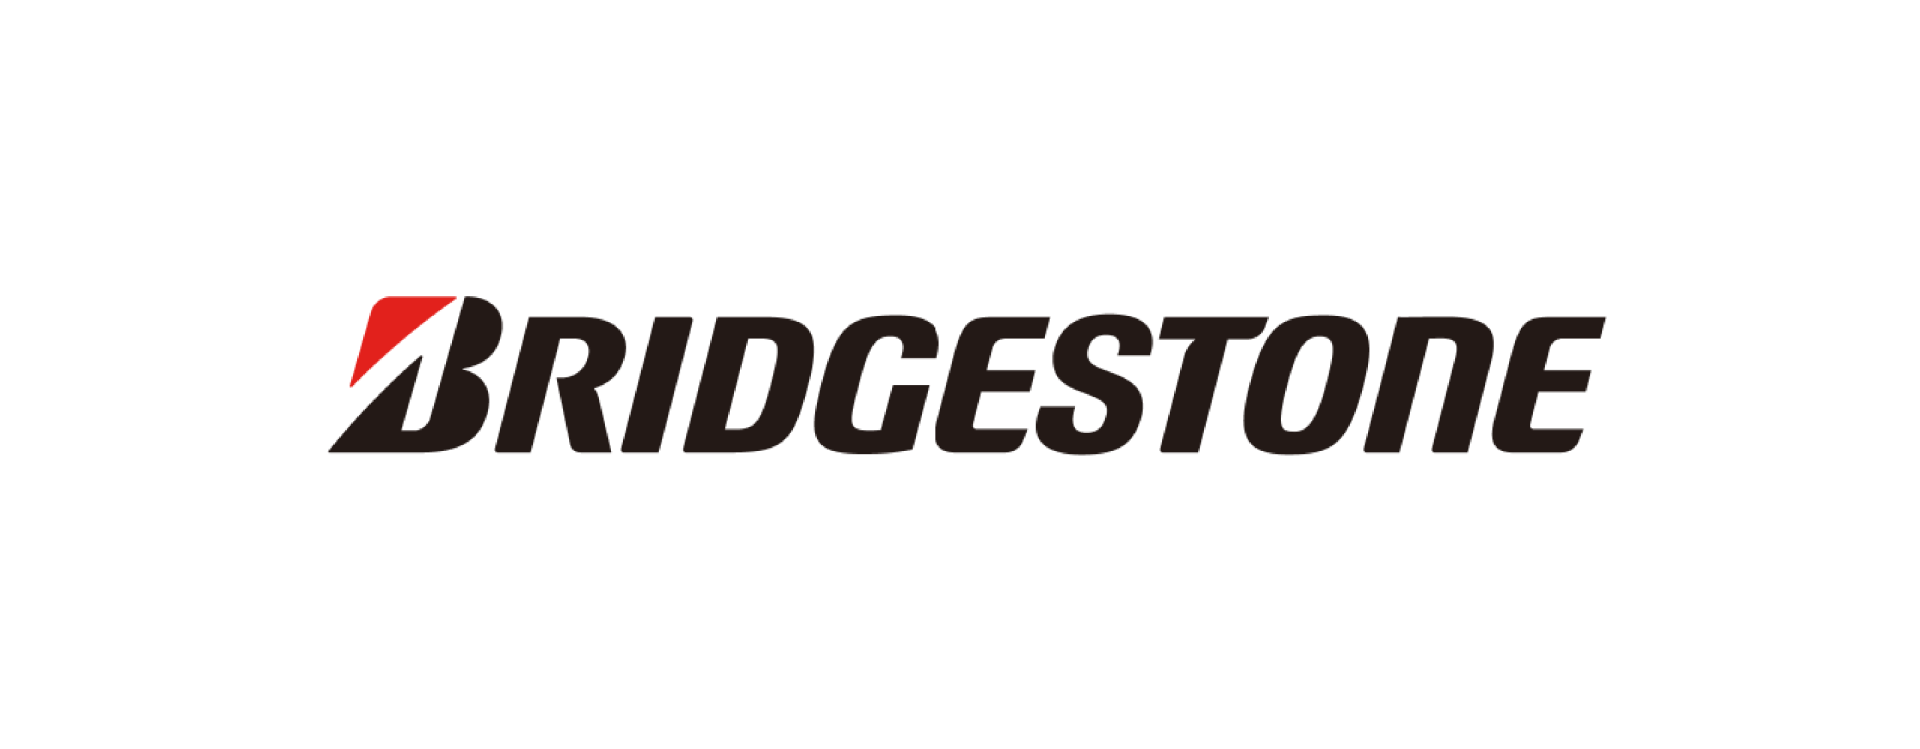 Bridgestone regresa al automovilismo mundial, a partir de la temporada 2026-2027, teniendo como eje central la sostenibilidad. V12MAGAZINE